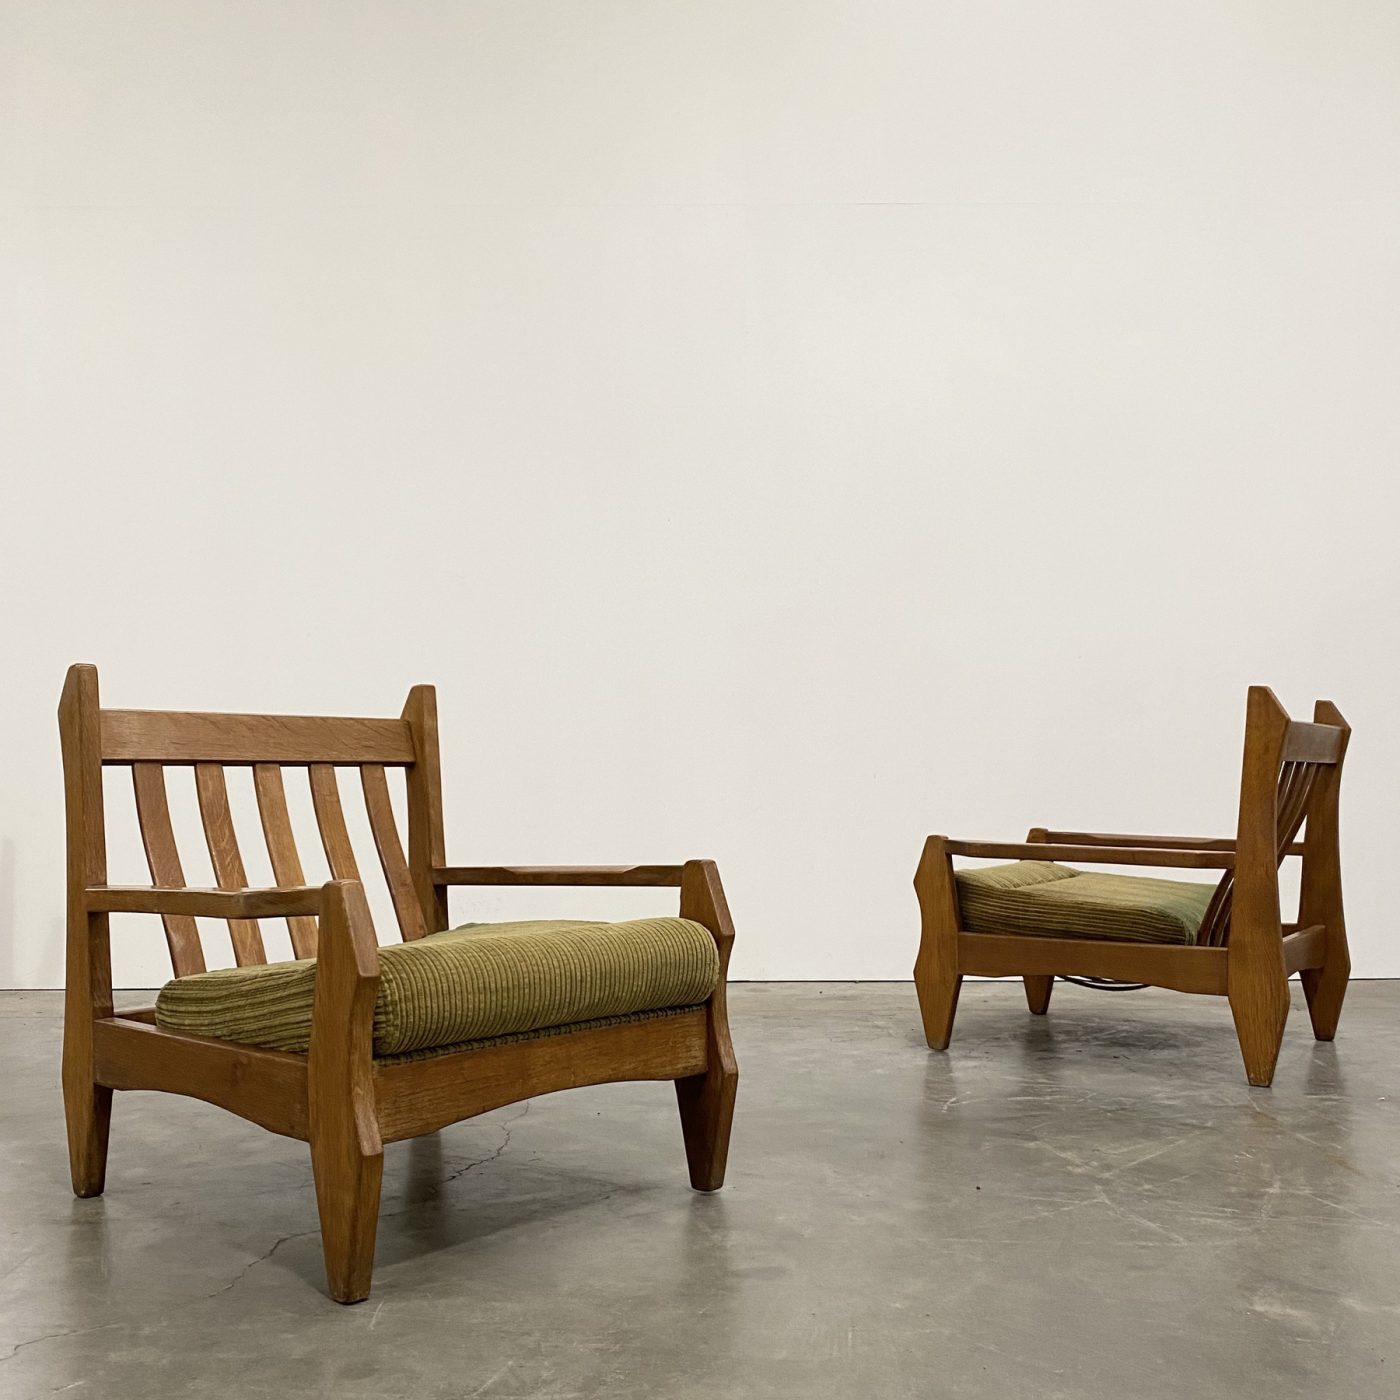 objet-vagabond-oak-armchairs0004